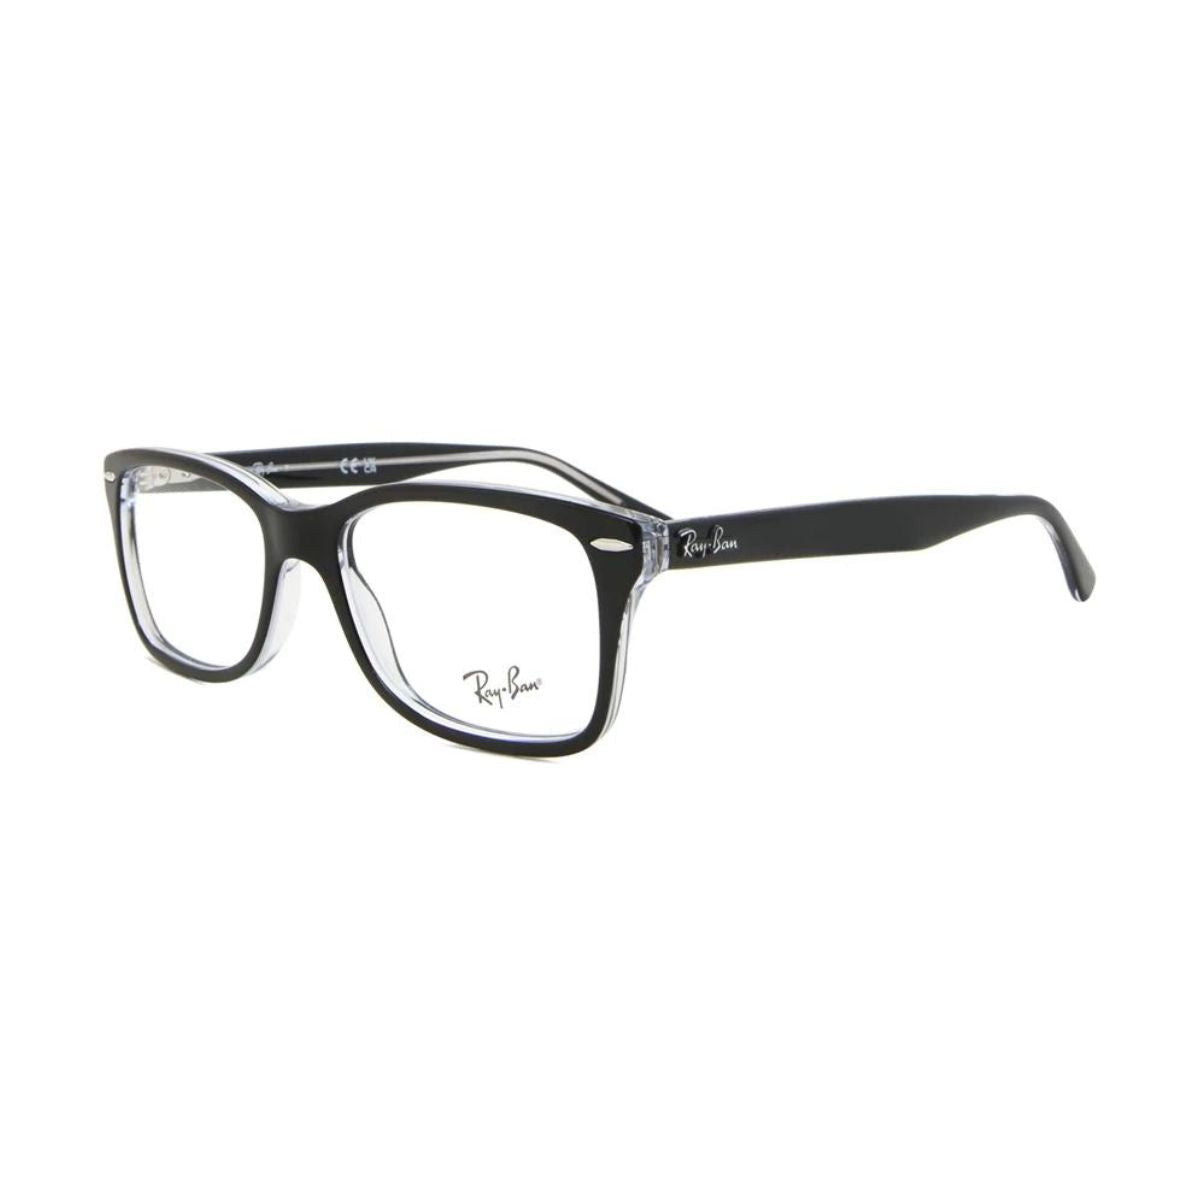 "Rayban 5428 2034 eyesight glasses frame for men's at optorium"